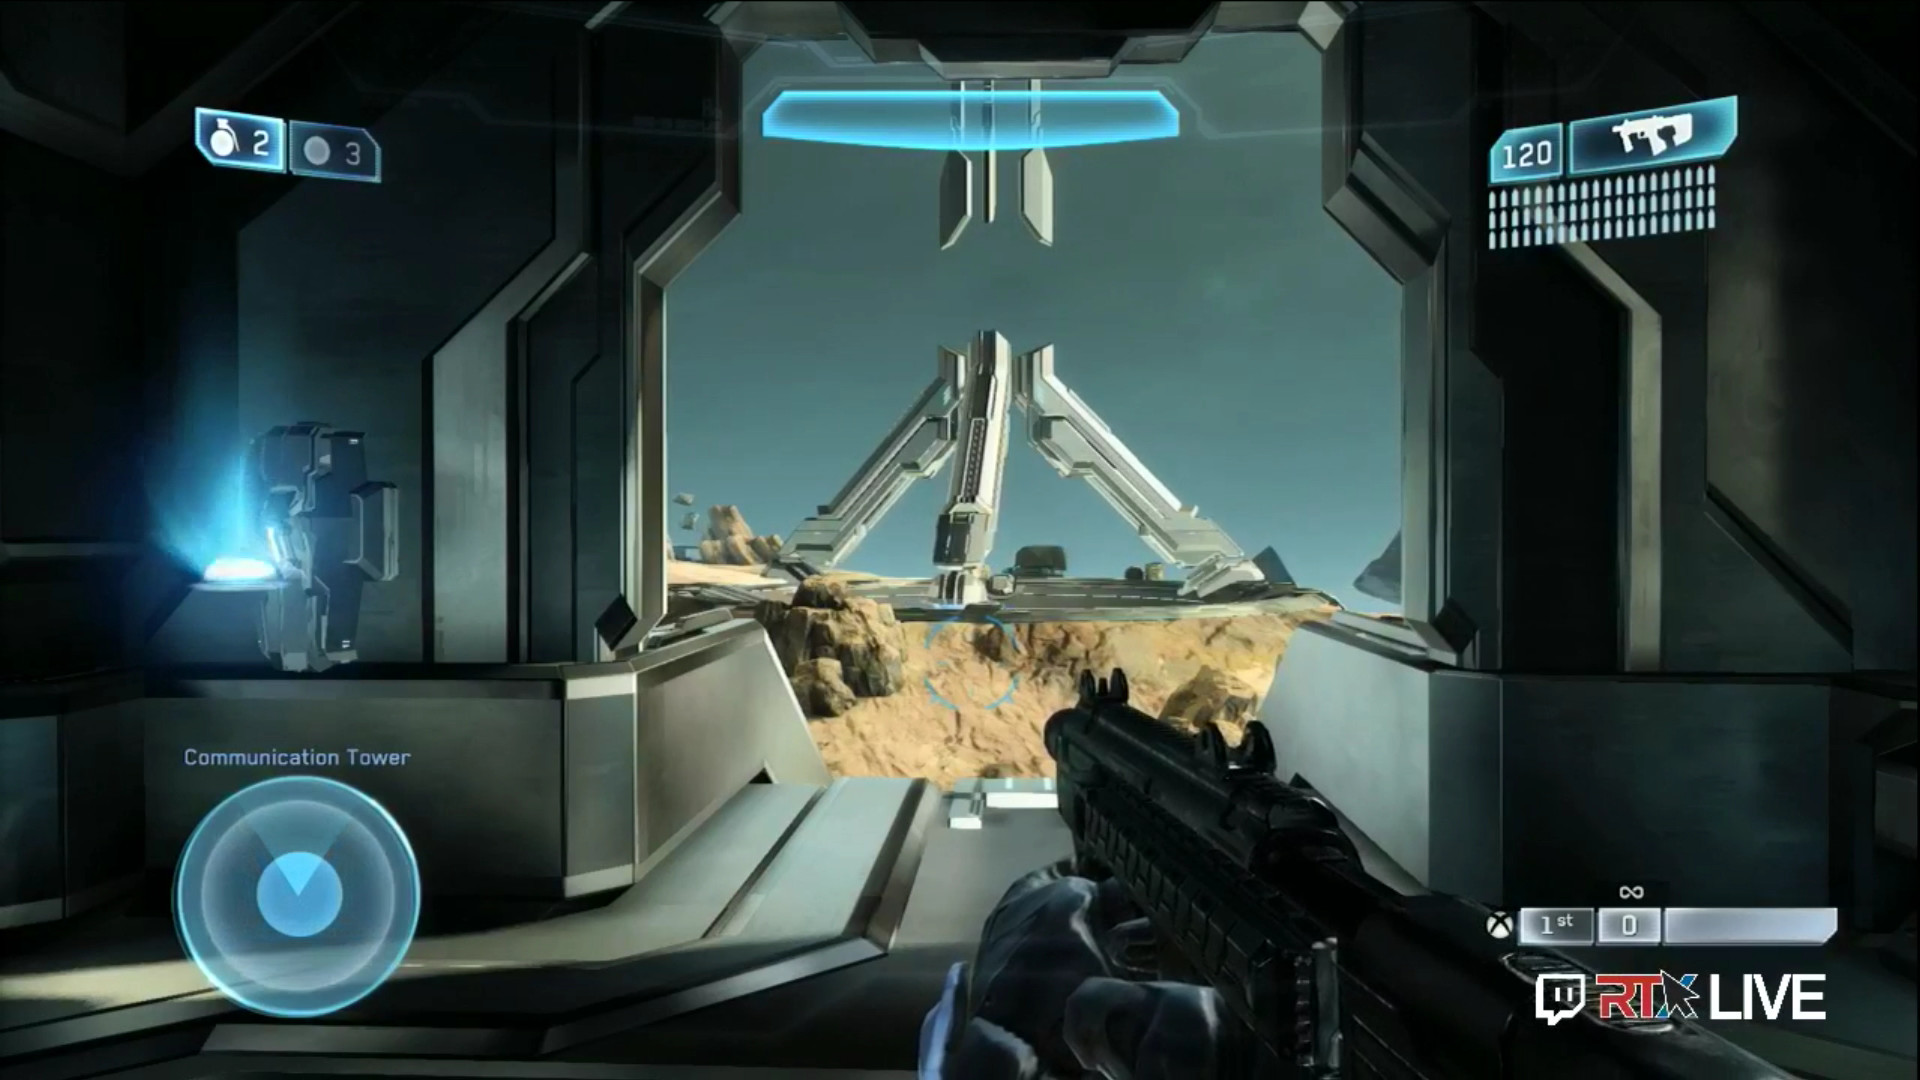 Halo 2 Anniversary Ascension RTX 2014